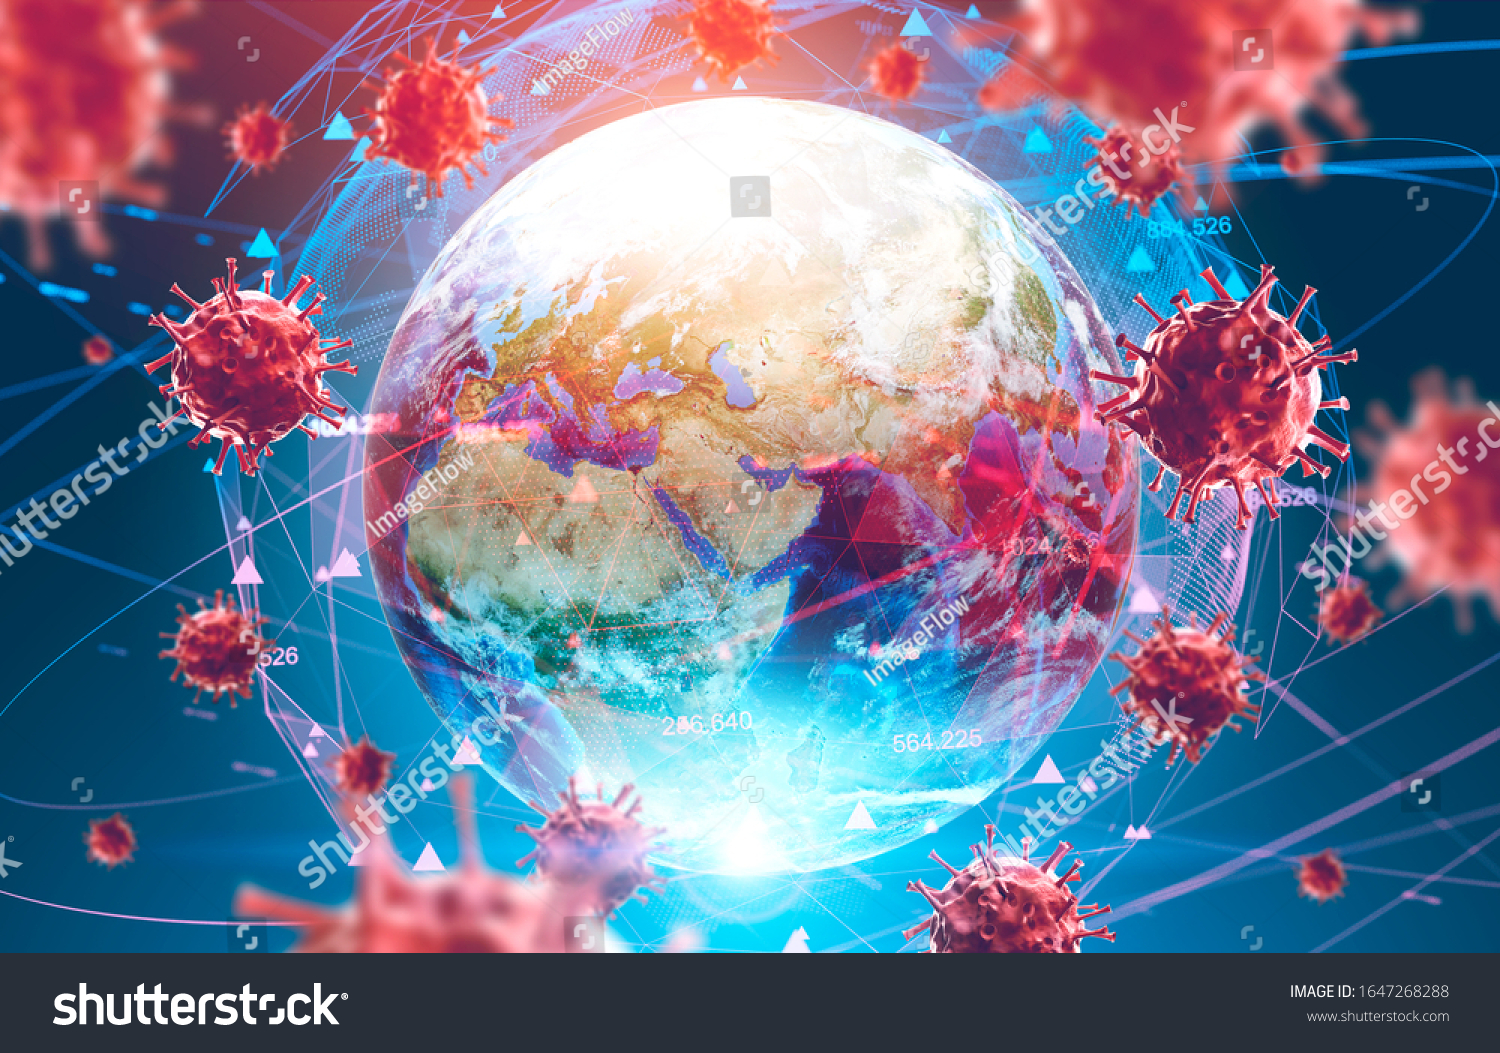 地球の背景にインフルエンザンコブコロナウイルスとぼかしたホログラム 治療法の探索と病気の広がりのコンセプト 3dレンダリングのトーン画像 Nasaが提供するこの画像のエレメント のイラスト素材